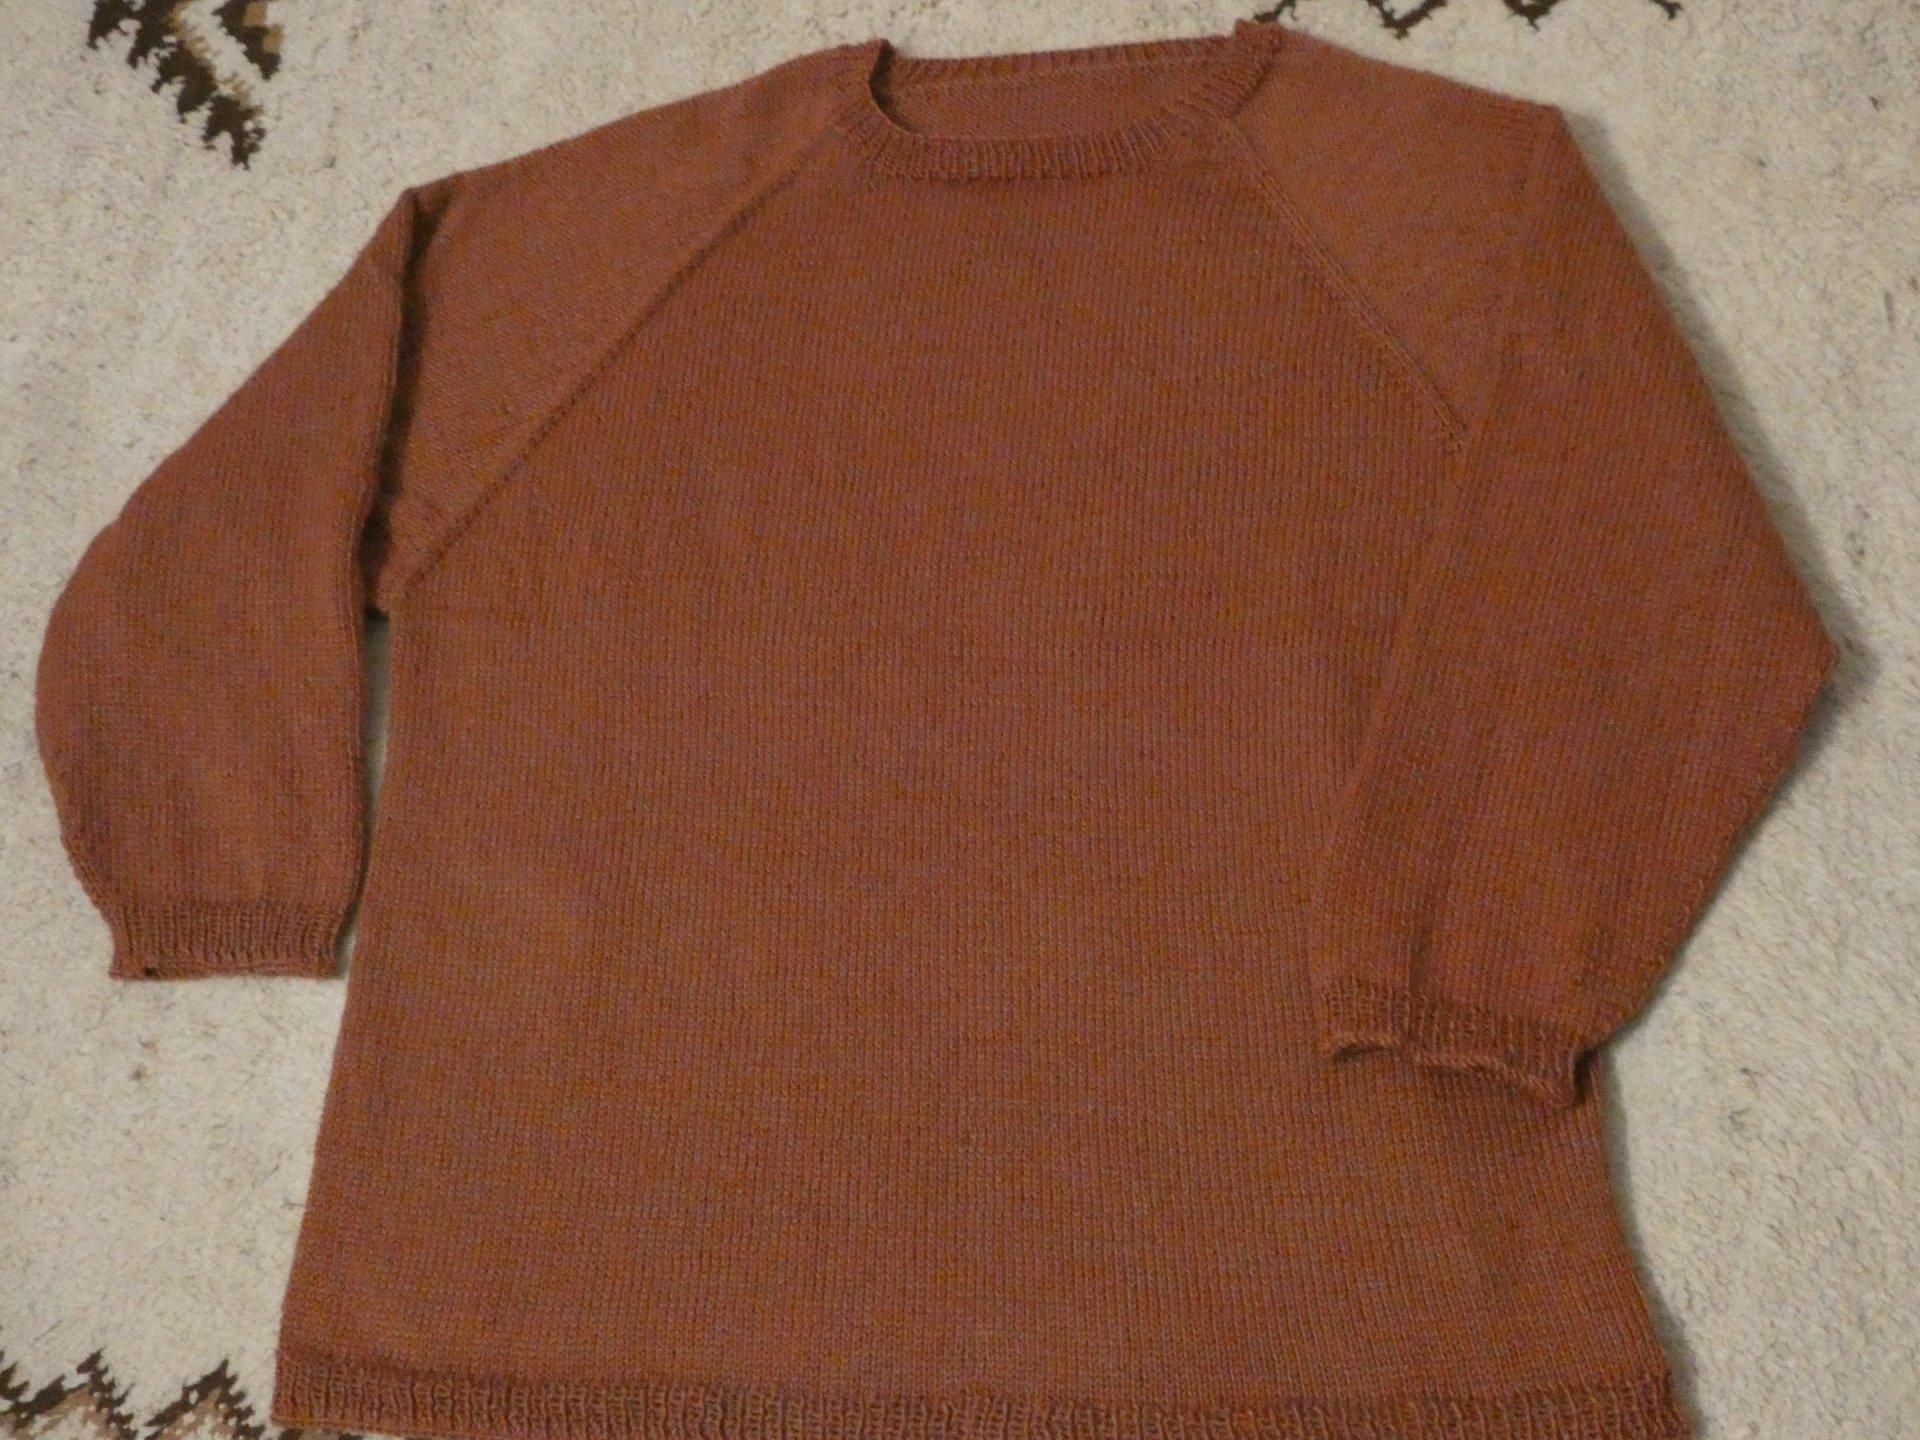 Mein erster RVO-Pullover